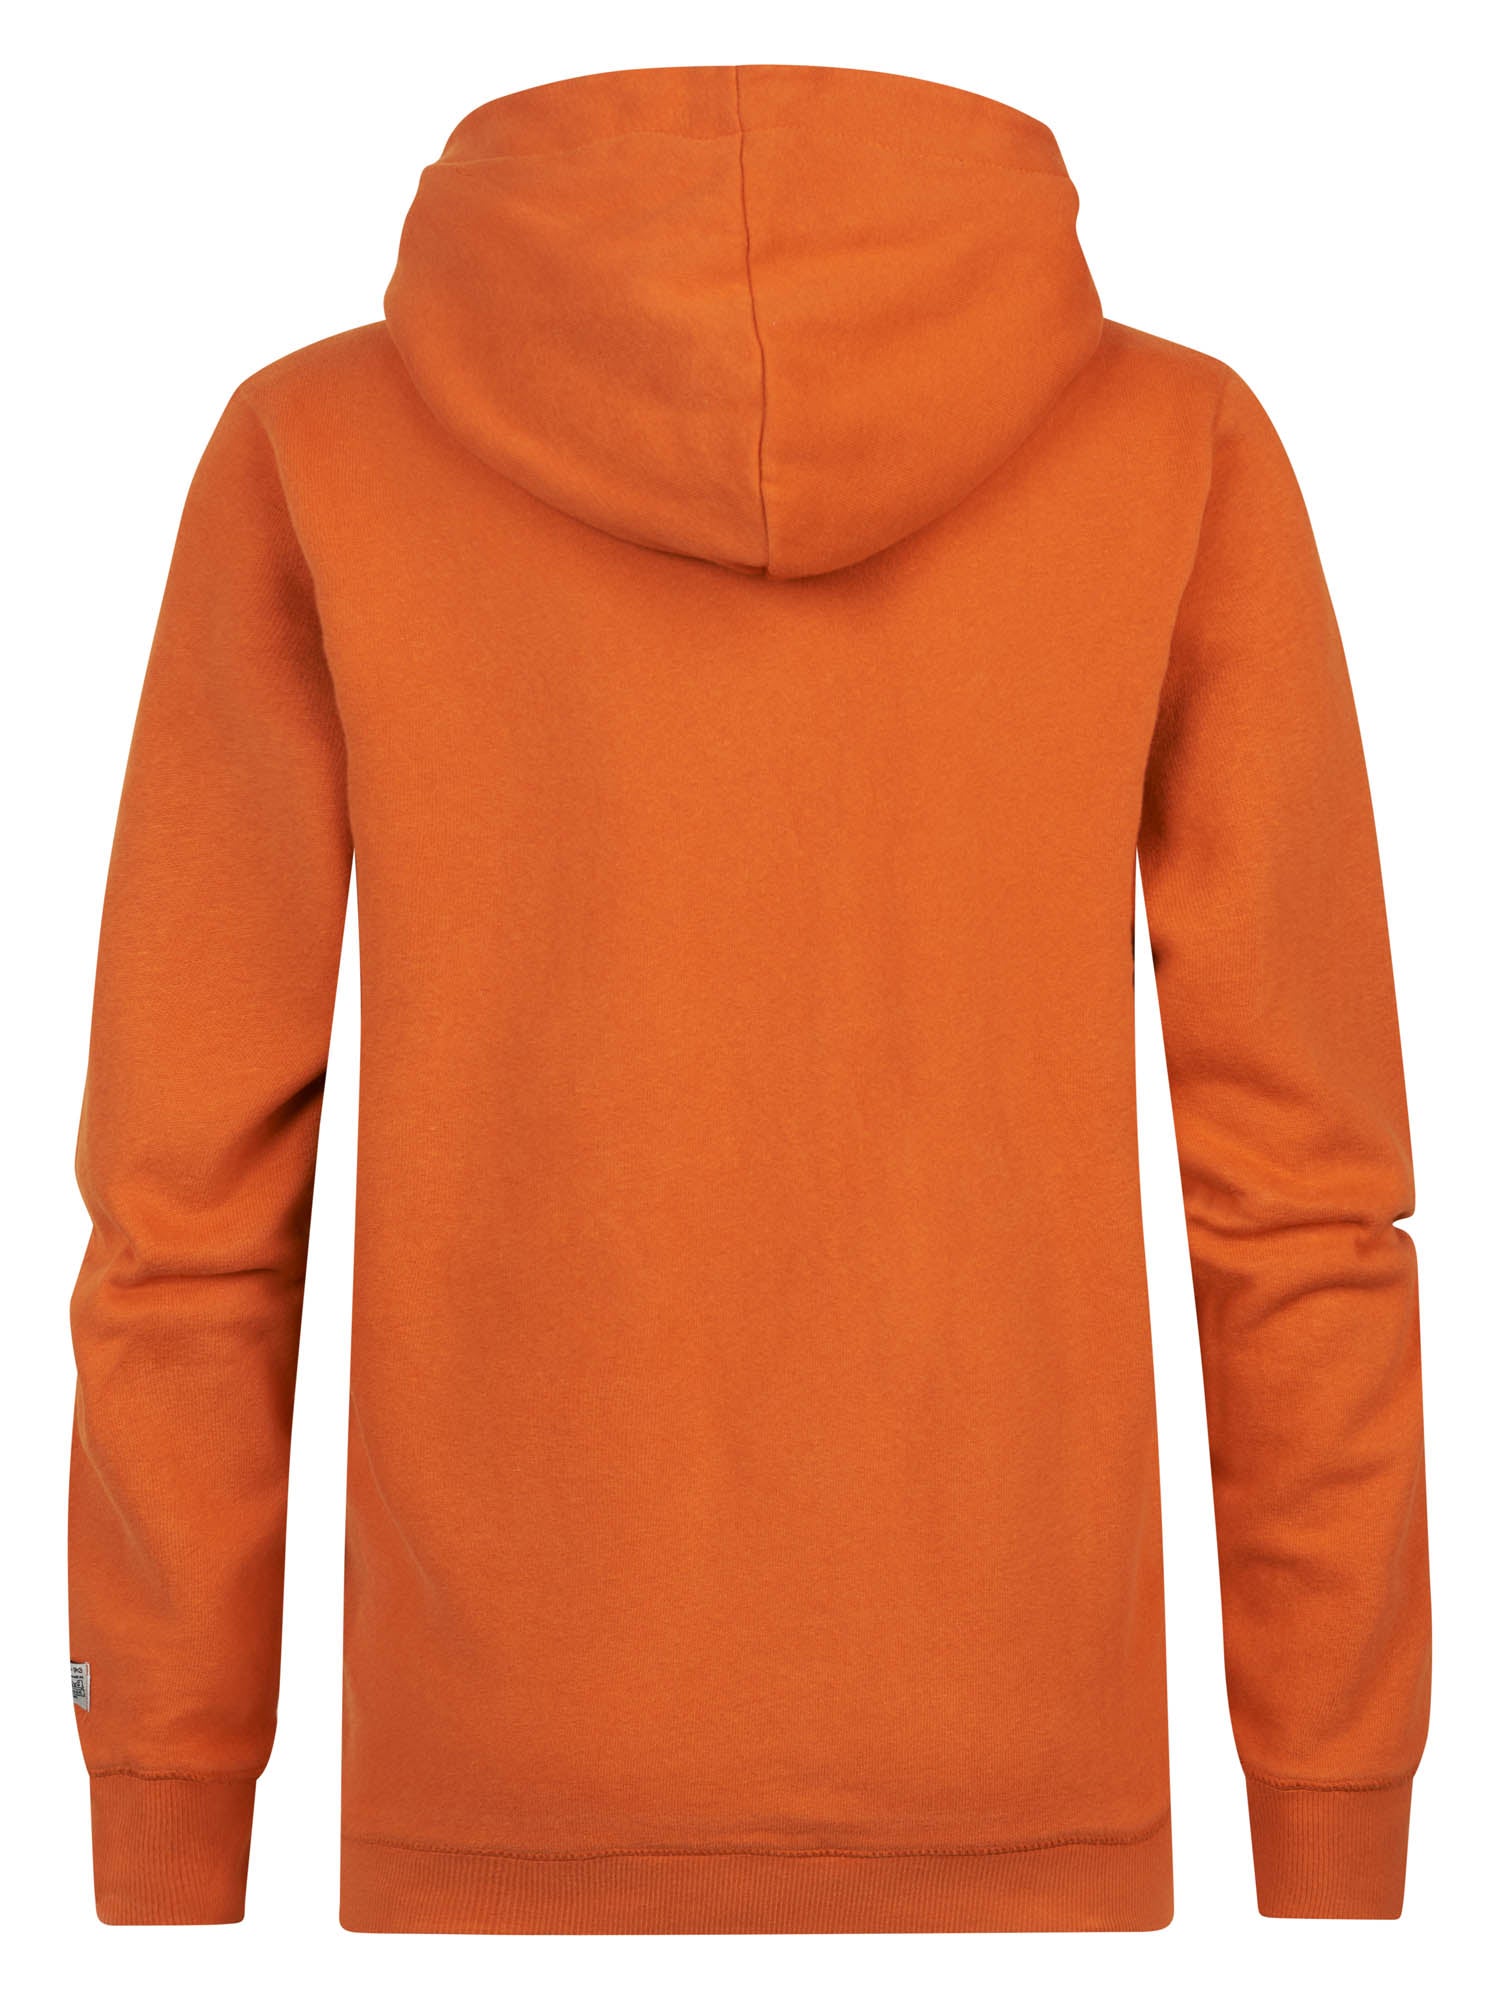 Jongens Sweater Hooded Print van Petrol in de kleur Orange Rust in maat 164.